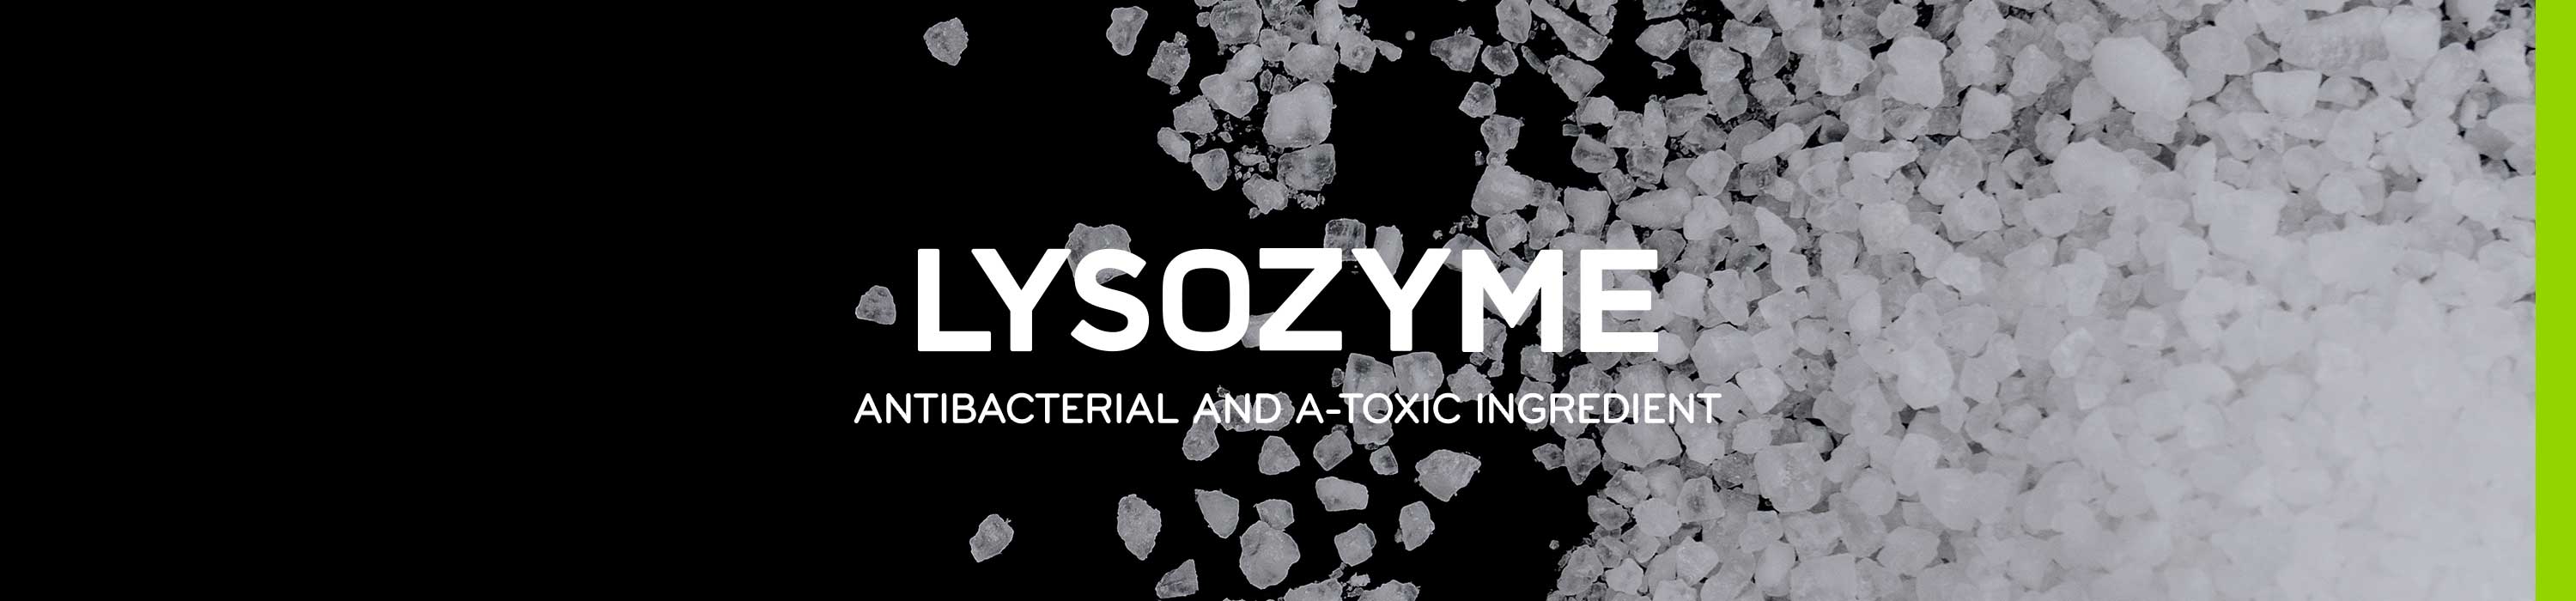 Bioseutica® - Lysozyme